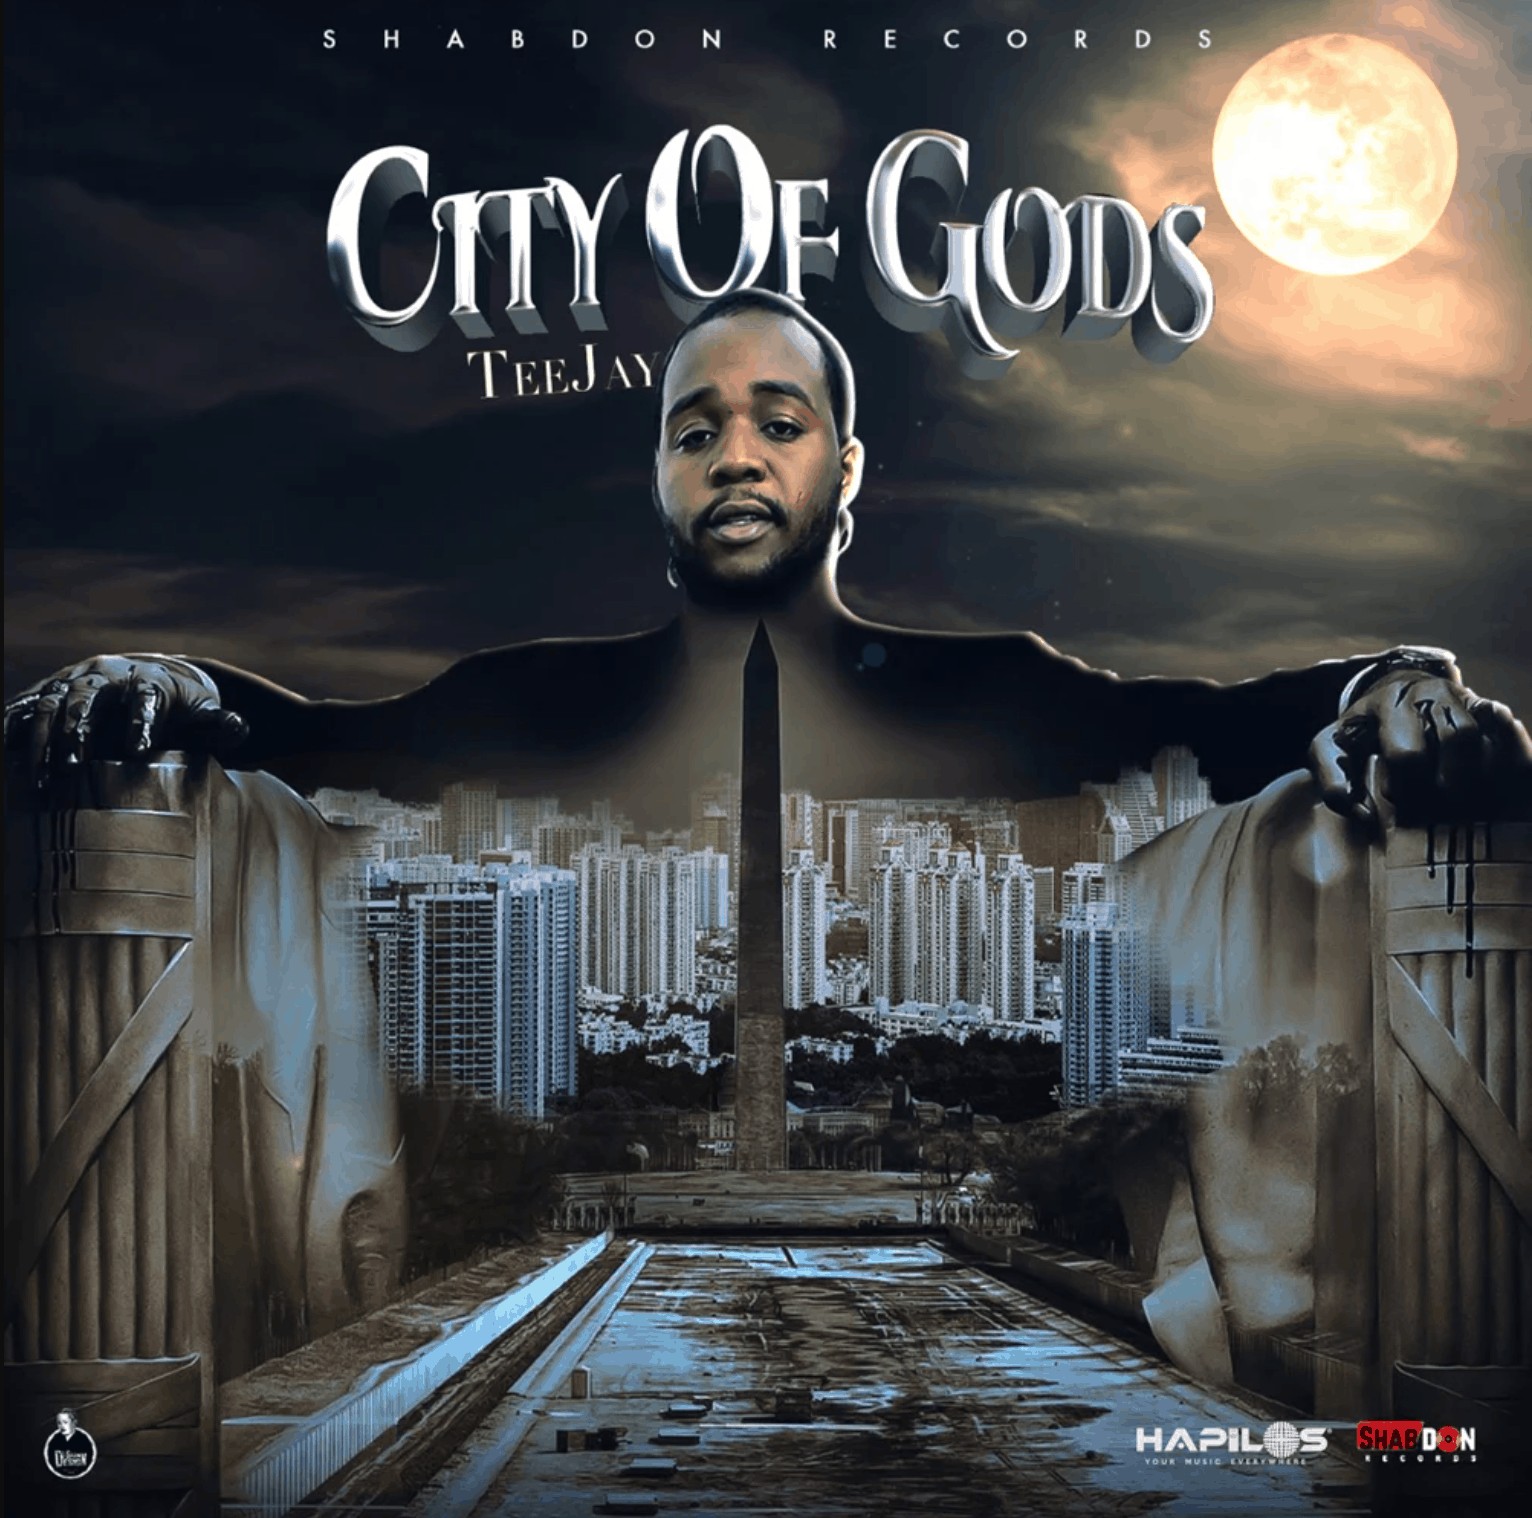 Teejay - City of Gods - Shab Don Records